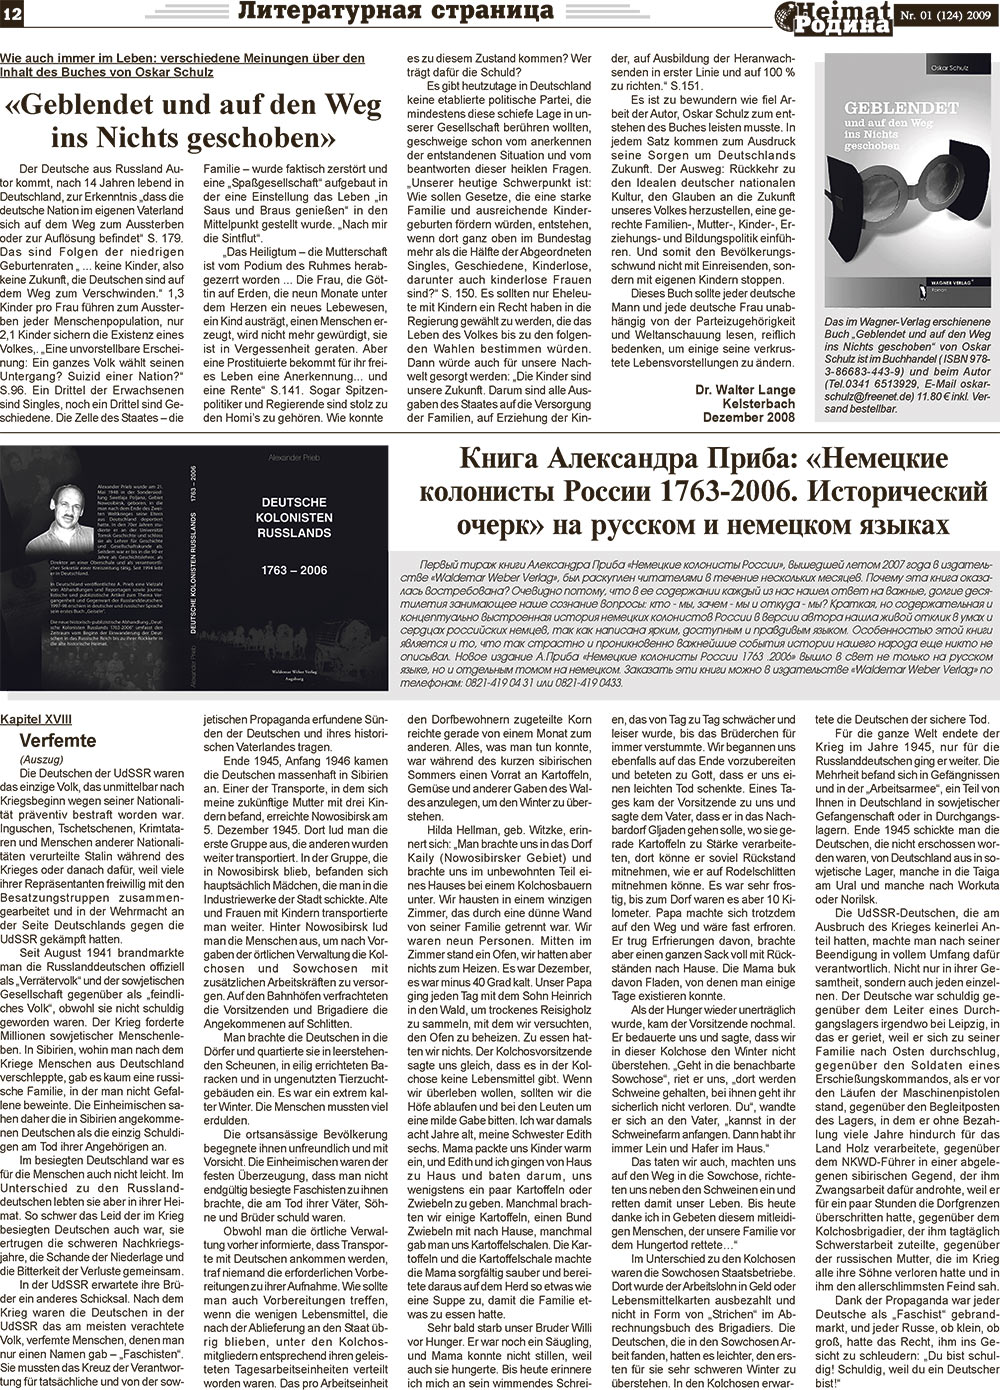 Heimat-Родина (газета). 2009 год, номер 1, стр. 12